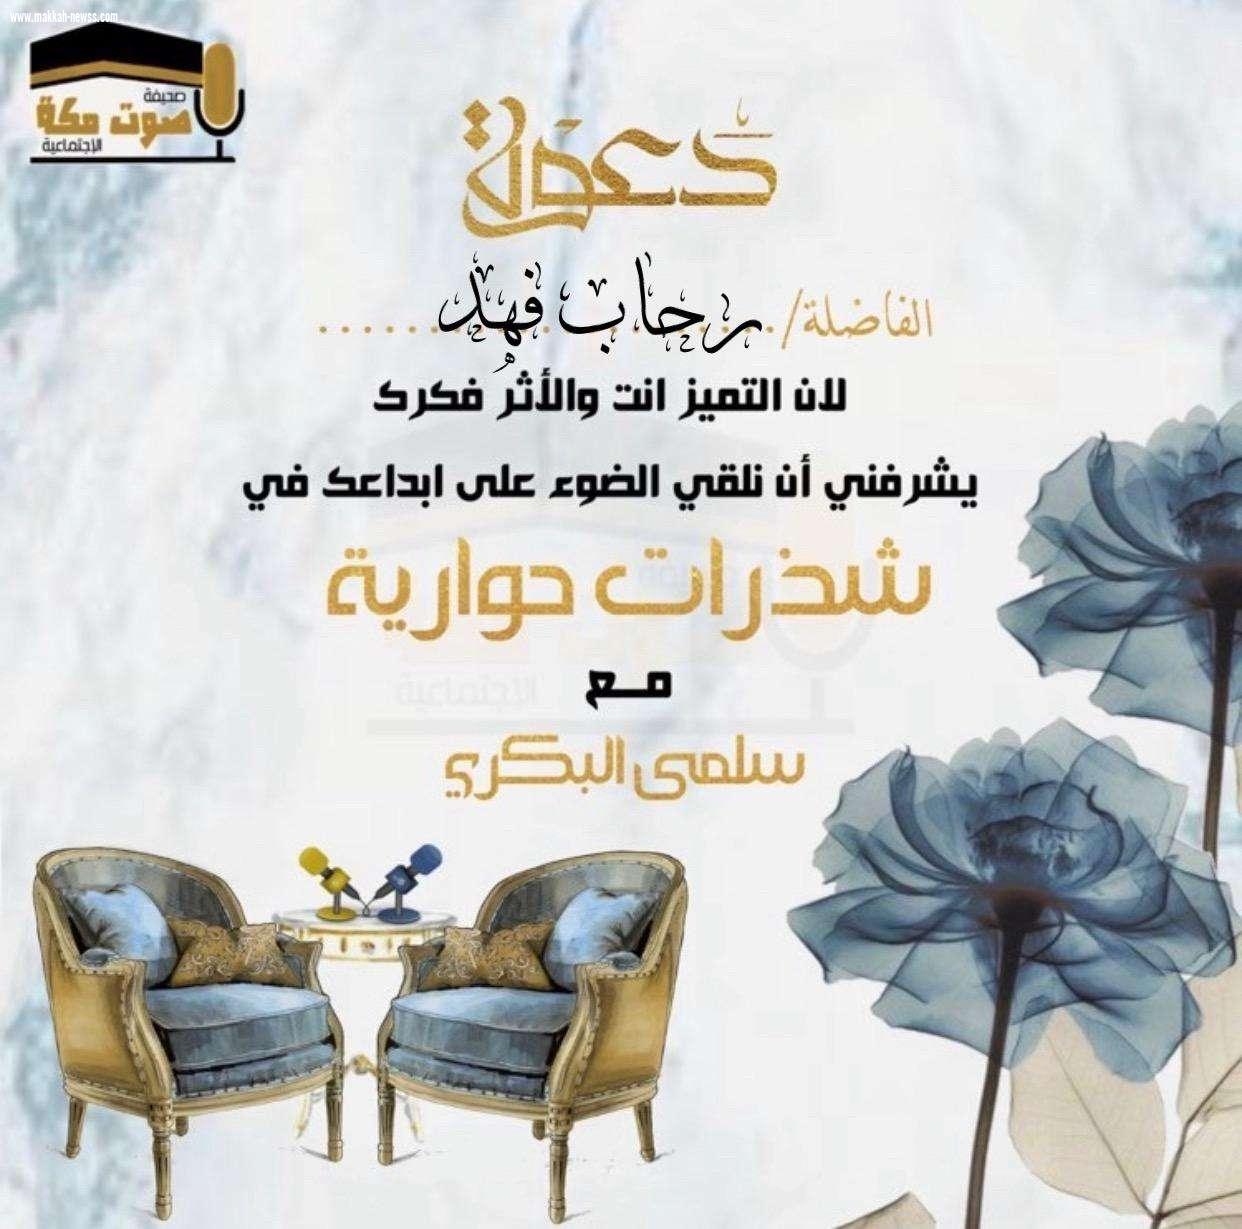 في حوار لصحيفة صوت مكة الاجتماعية مع الكاتبة  رحاب فهد  :  - كتاب (إياك نستعين) موجة للفئة اليائسة والمحبطة من الحياة .